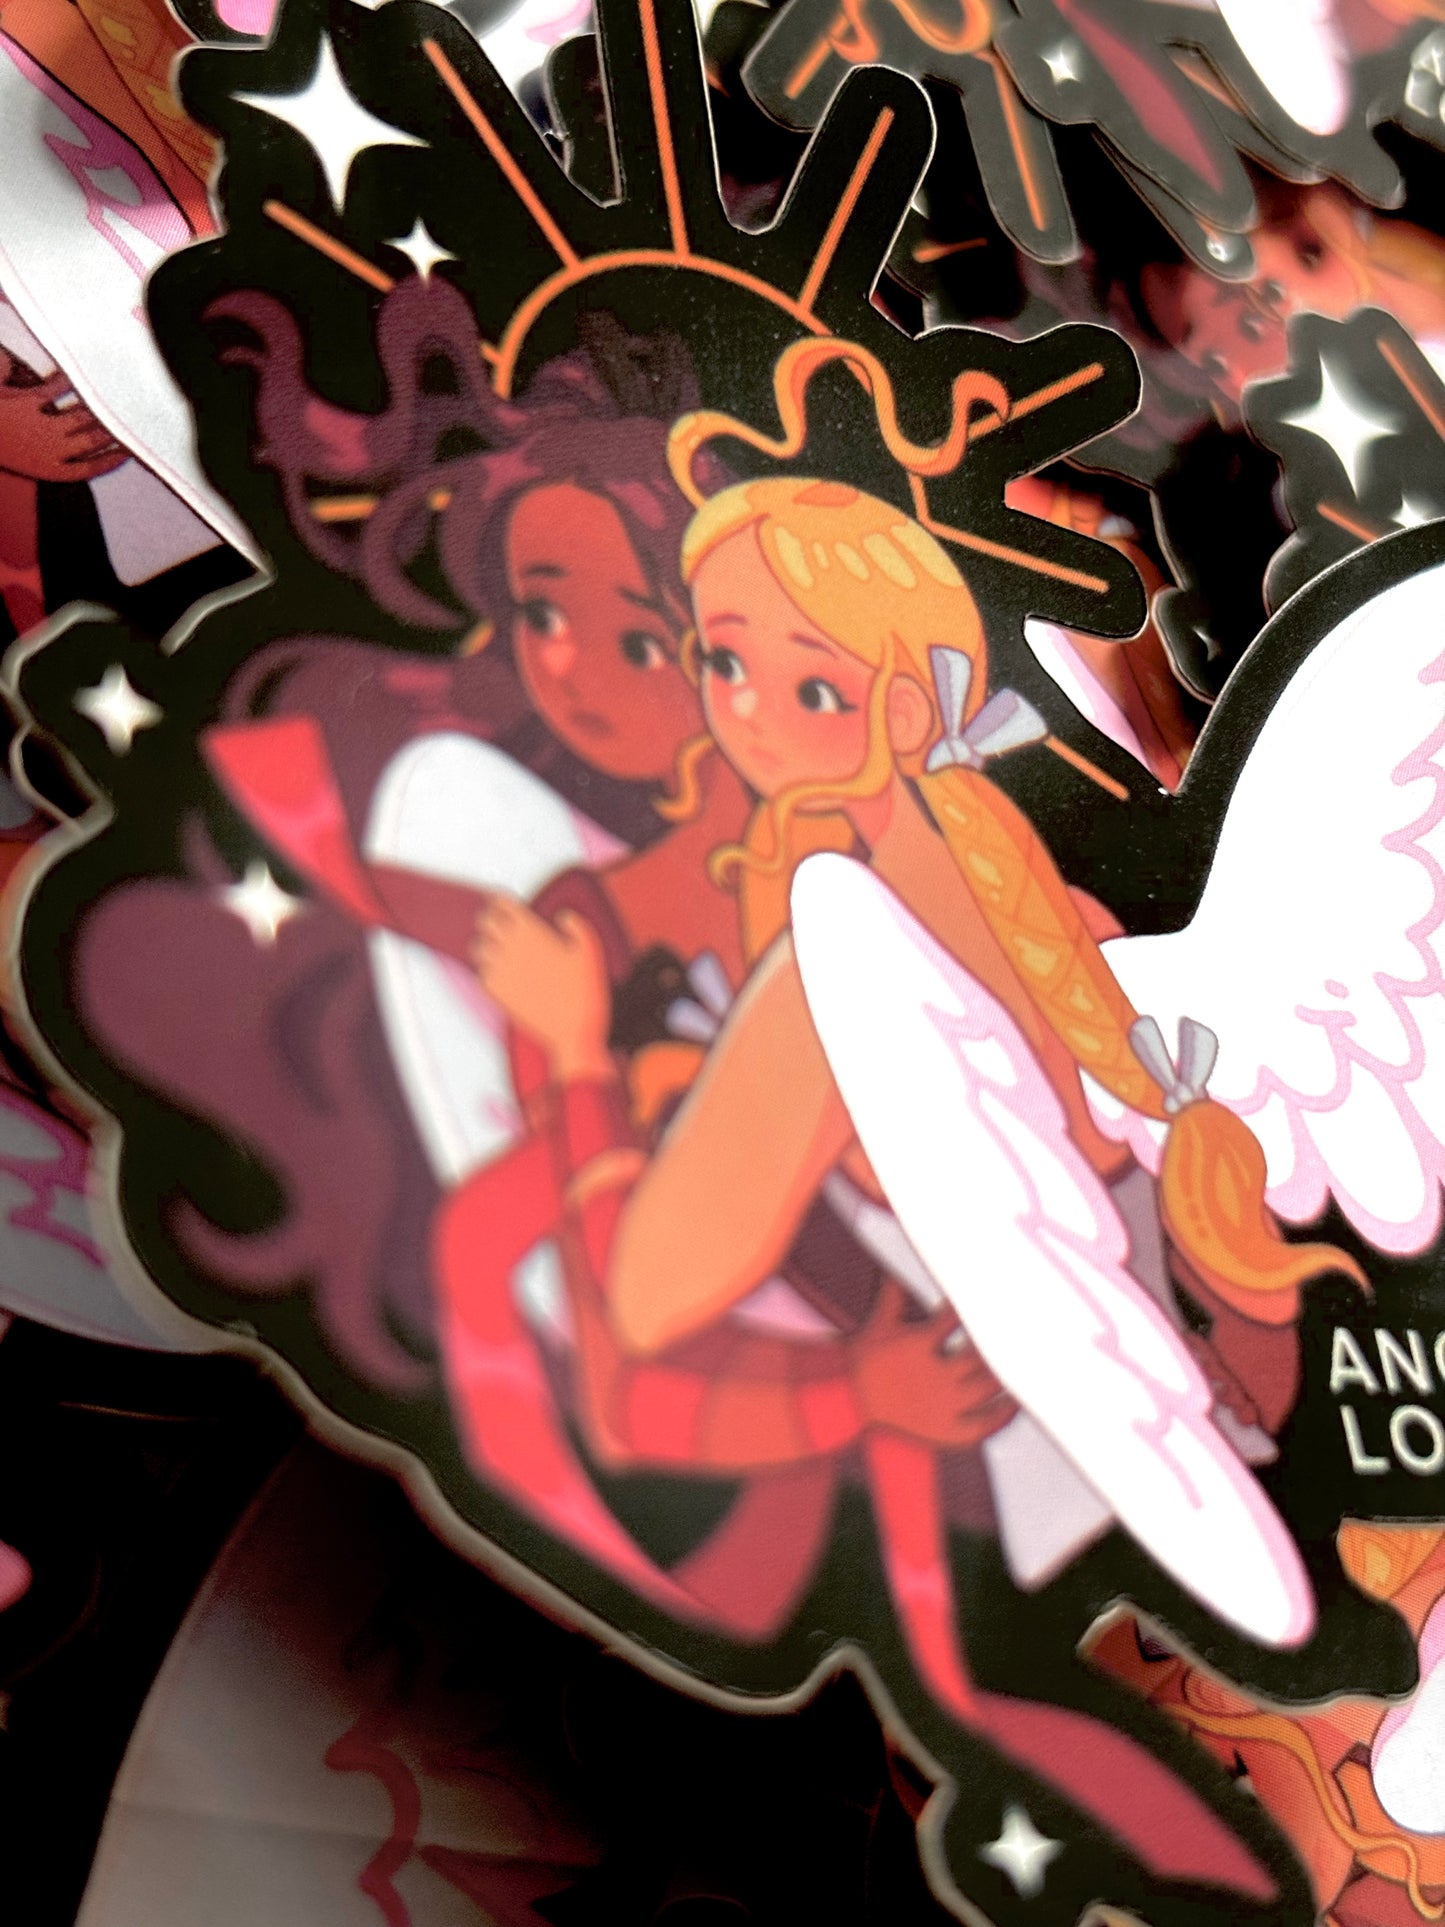 ANGELIC LOVE - vinyl mirror sticker